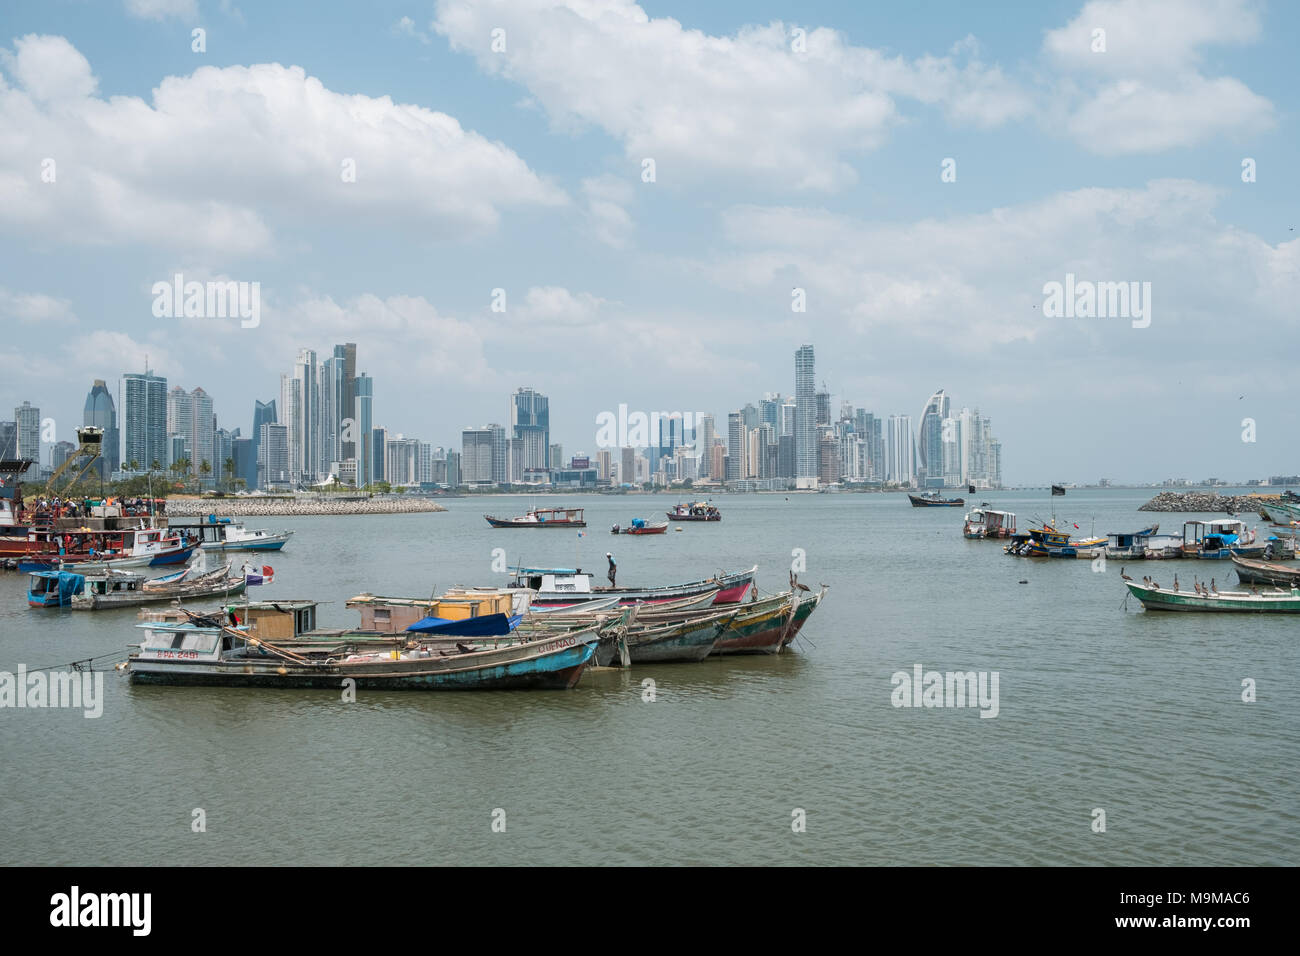 Boote in der Nähe von Fischmarkt und Wolkenkratzer Skyline, Küste von Panama City, Panama Stockfoto